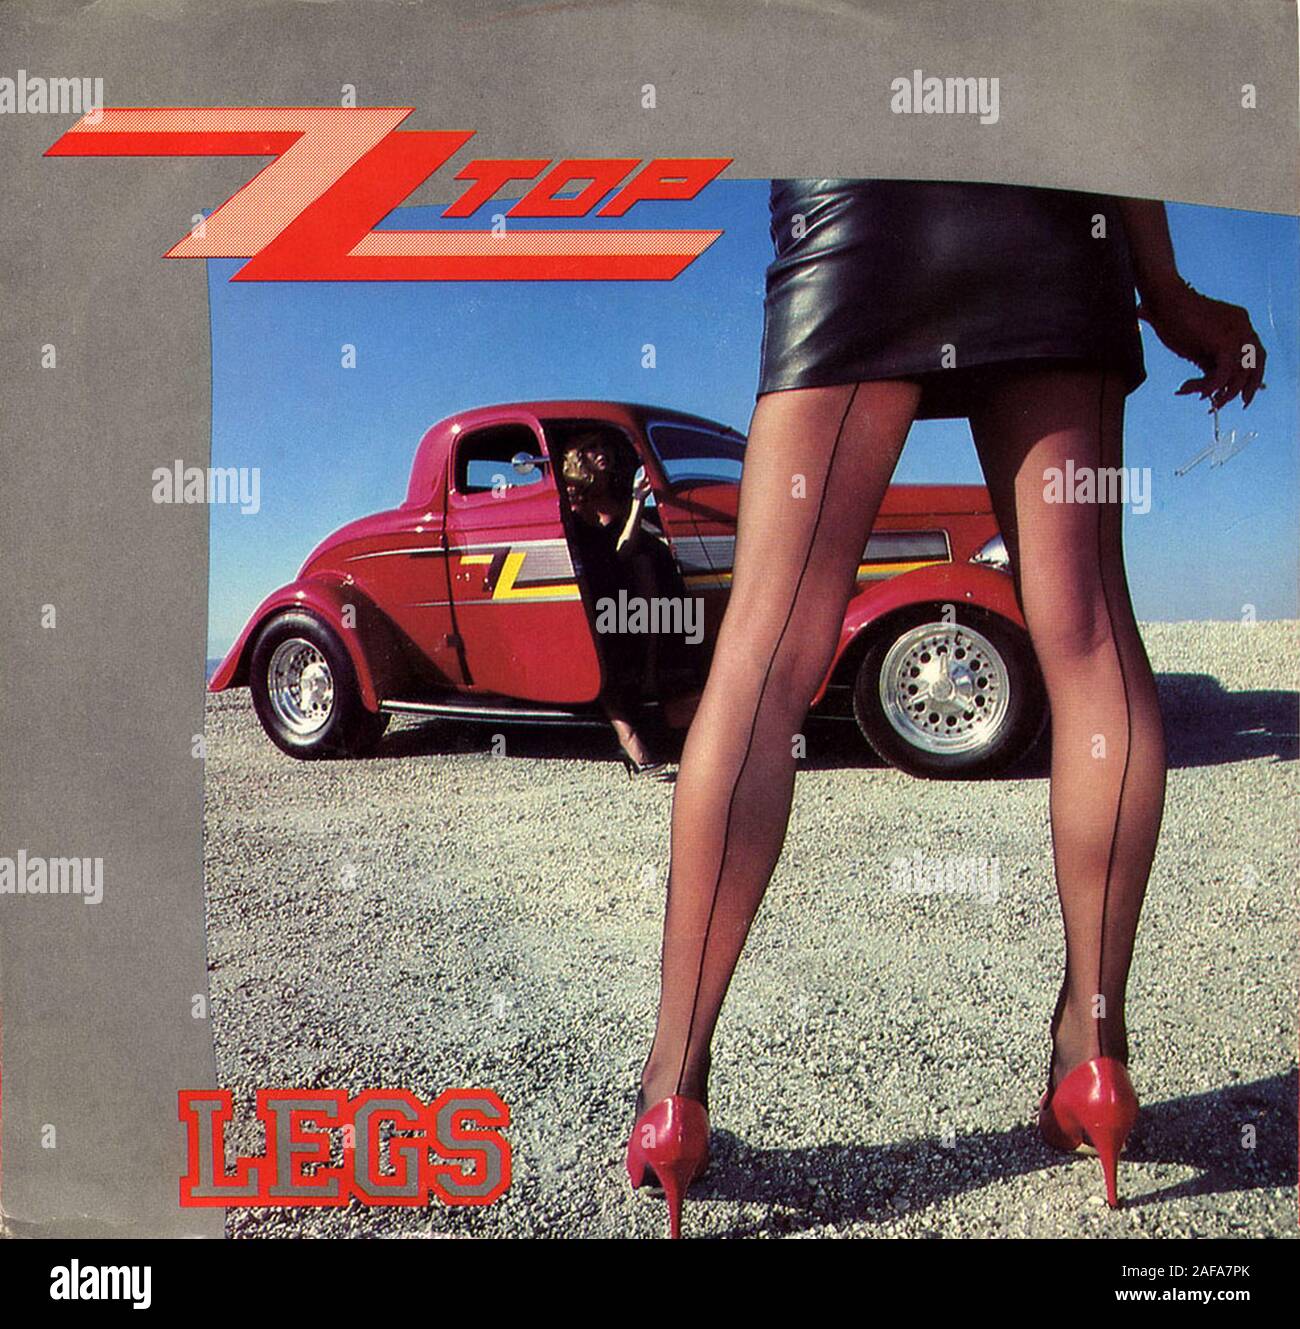 ZZ Top - Legs - Vintage vinyl album cover Stock Photo - Alamy